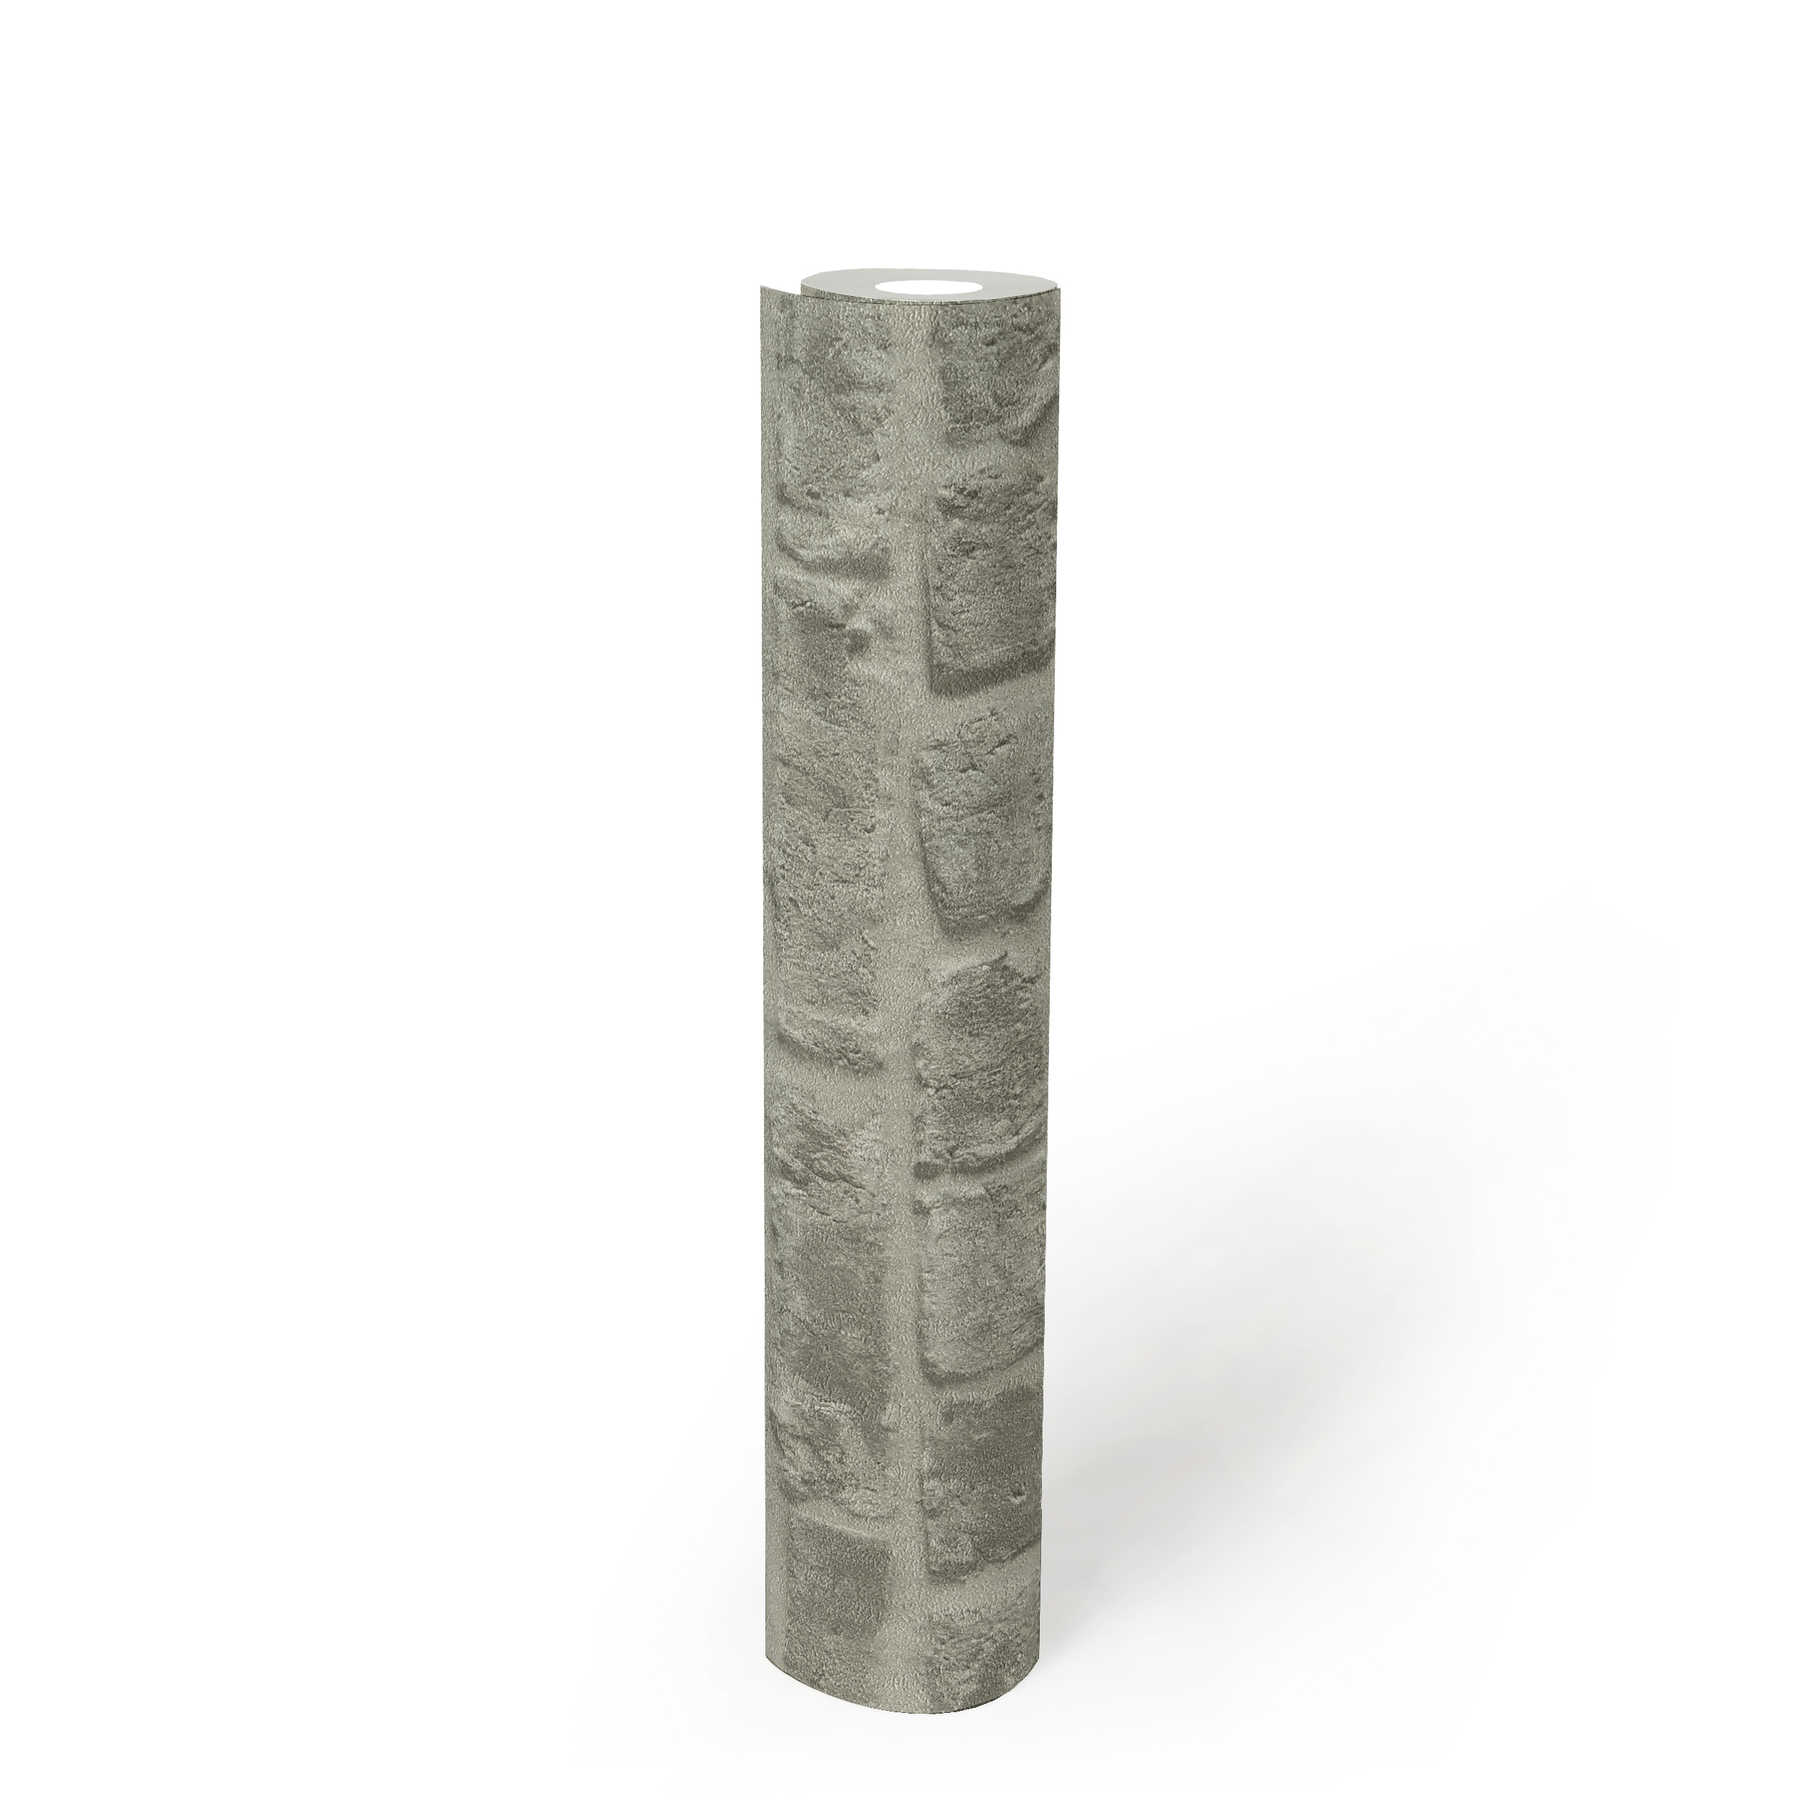             Donkergrijs steenlook behang baksteen metselwerk - grijs
        